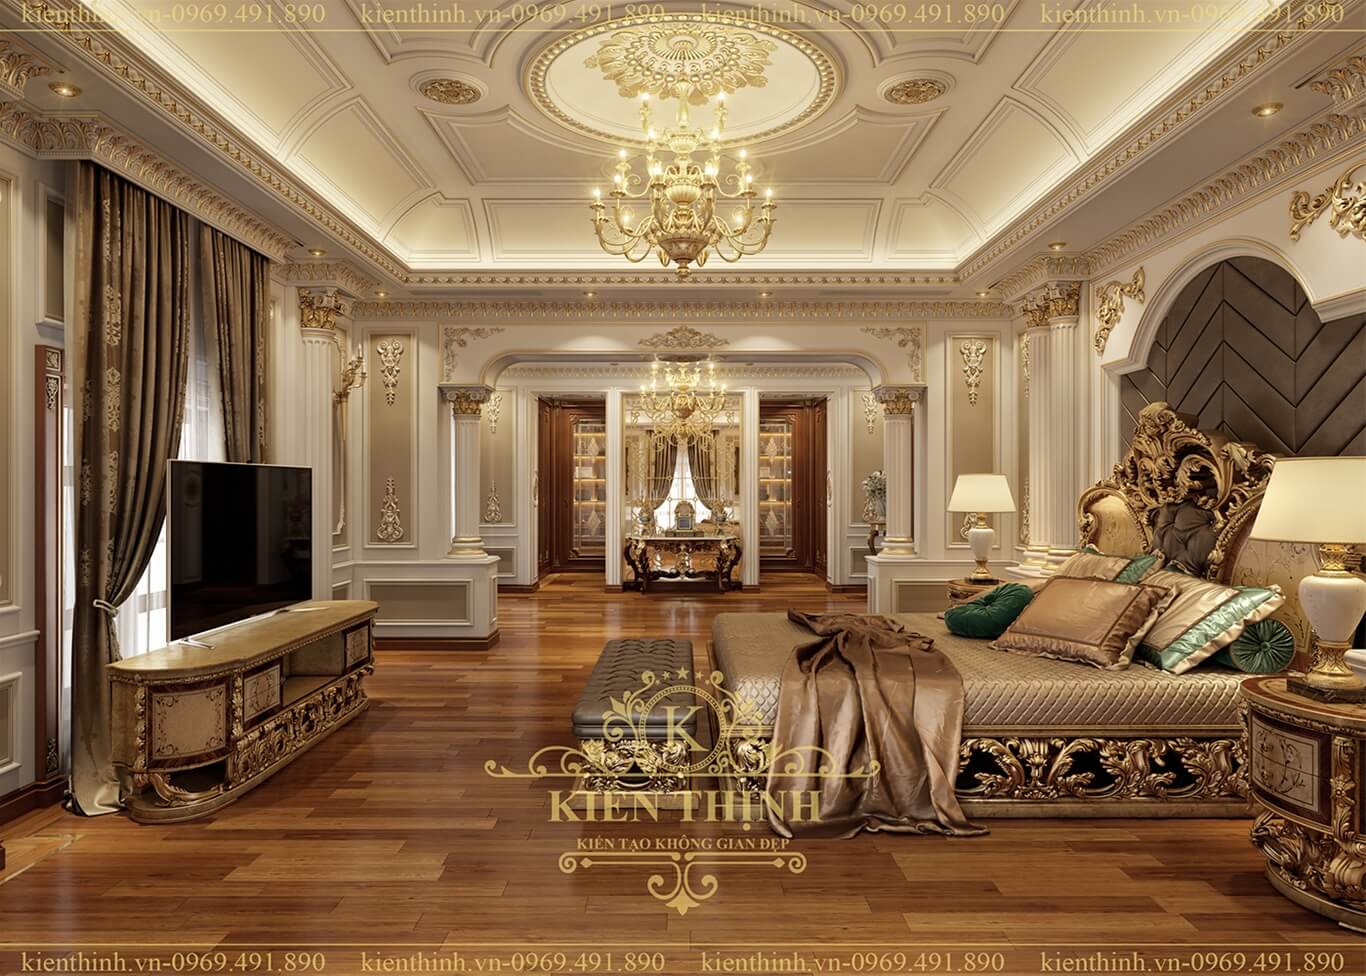 thiết kế nội thất phòng ngủ Master biệt thự lâu đài phong cách tân cổ điển châu Âu sang trọng ở Đồng Nai 04